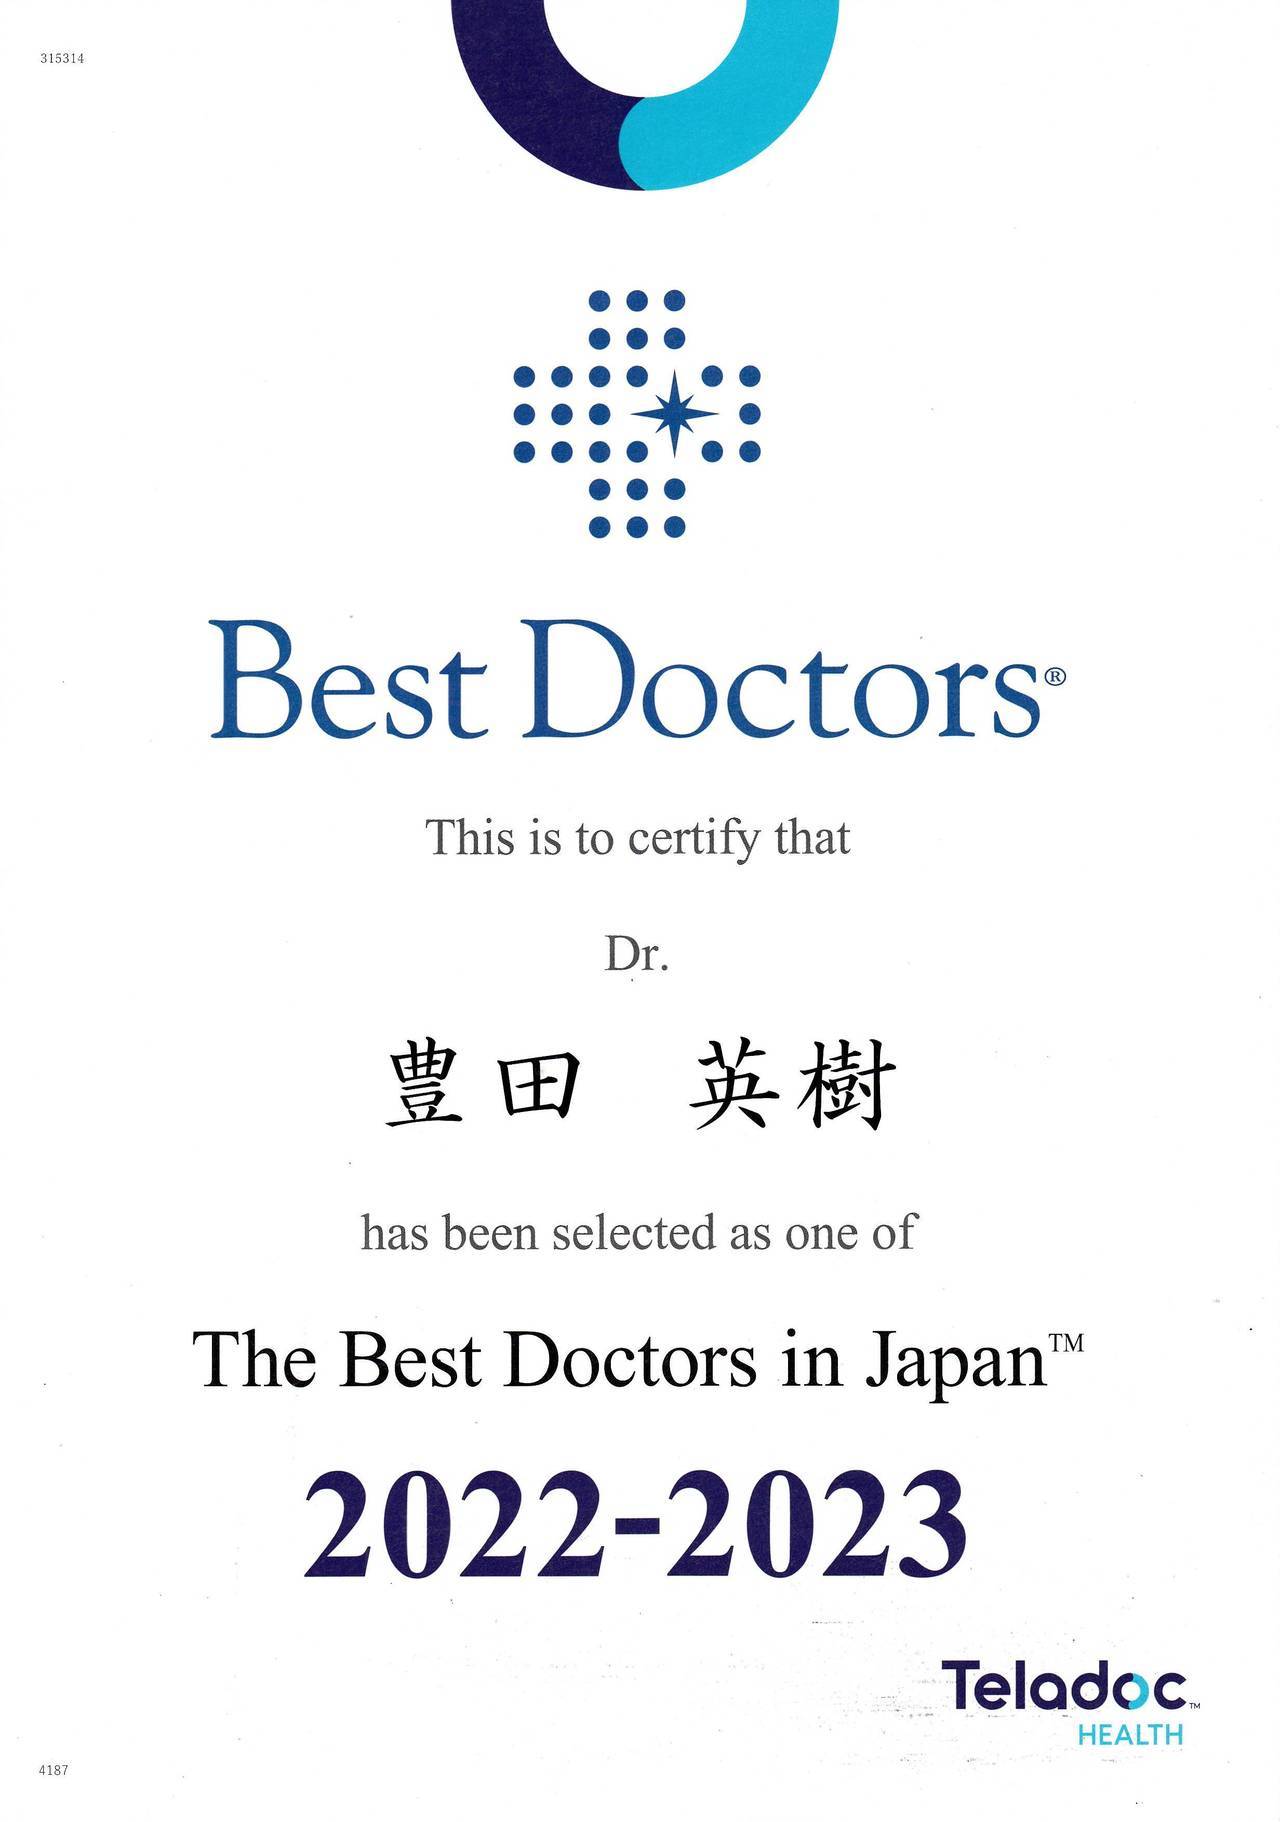 Best Docters 2022-2023.jpg